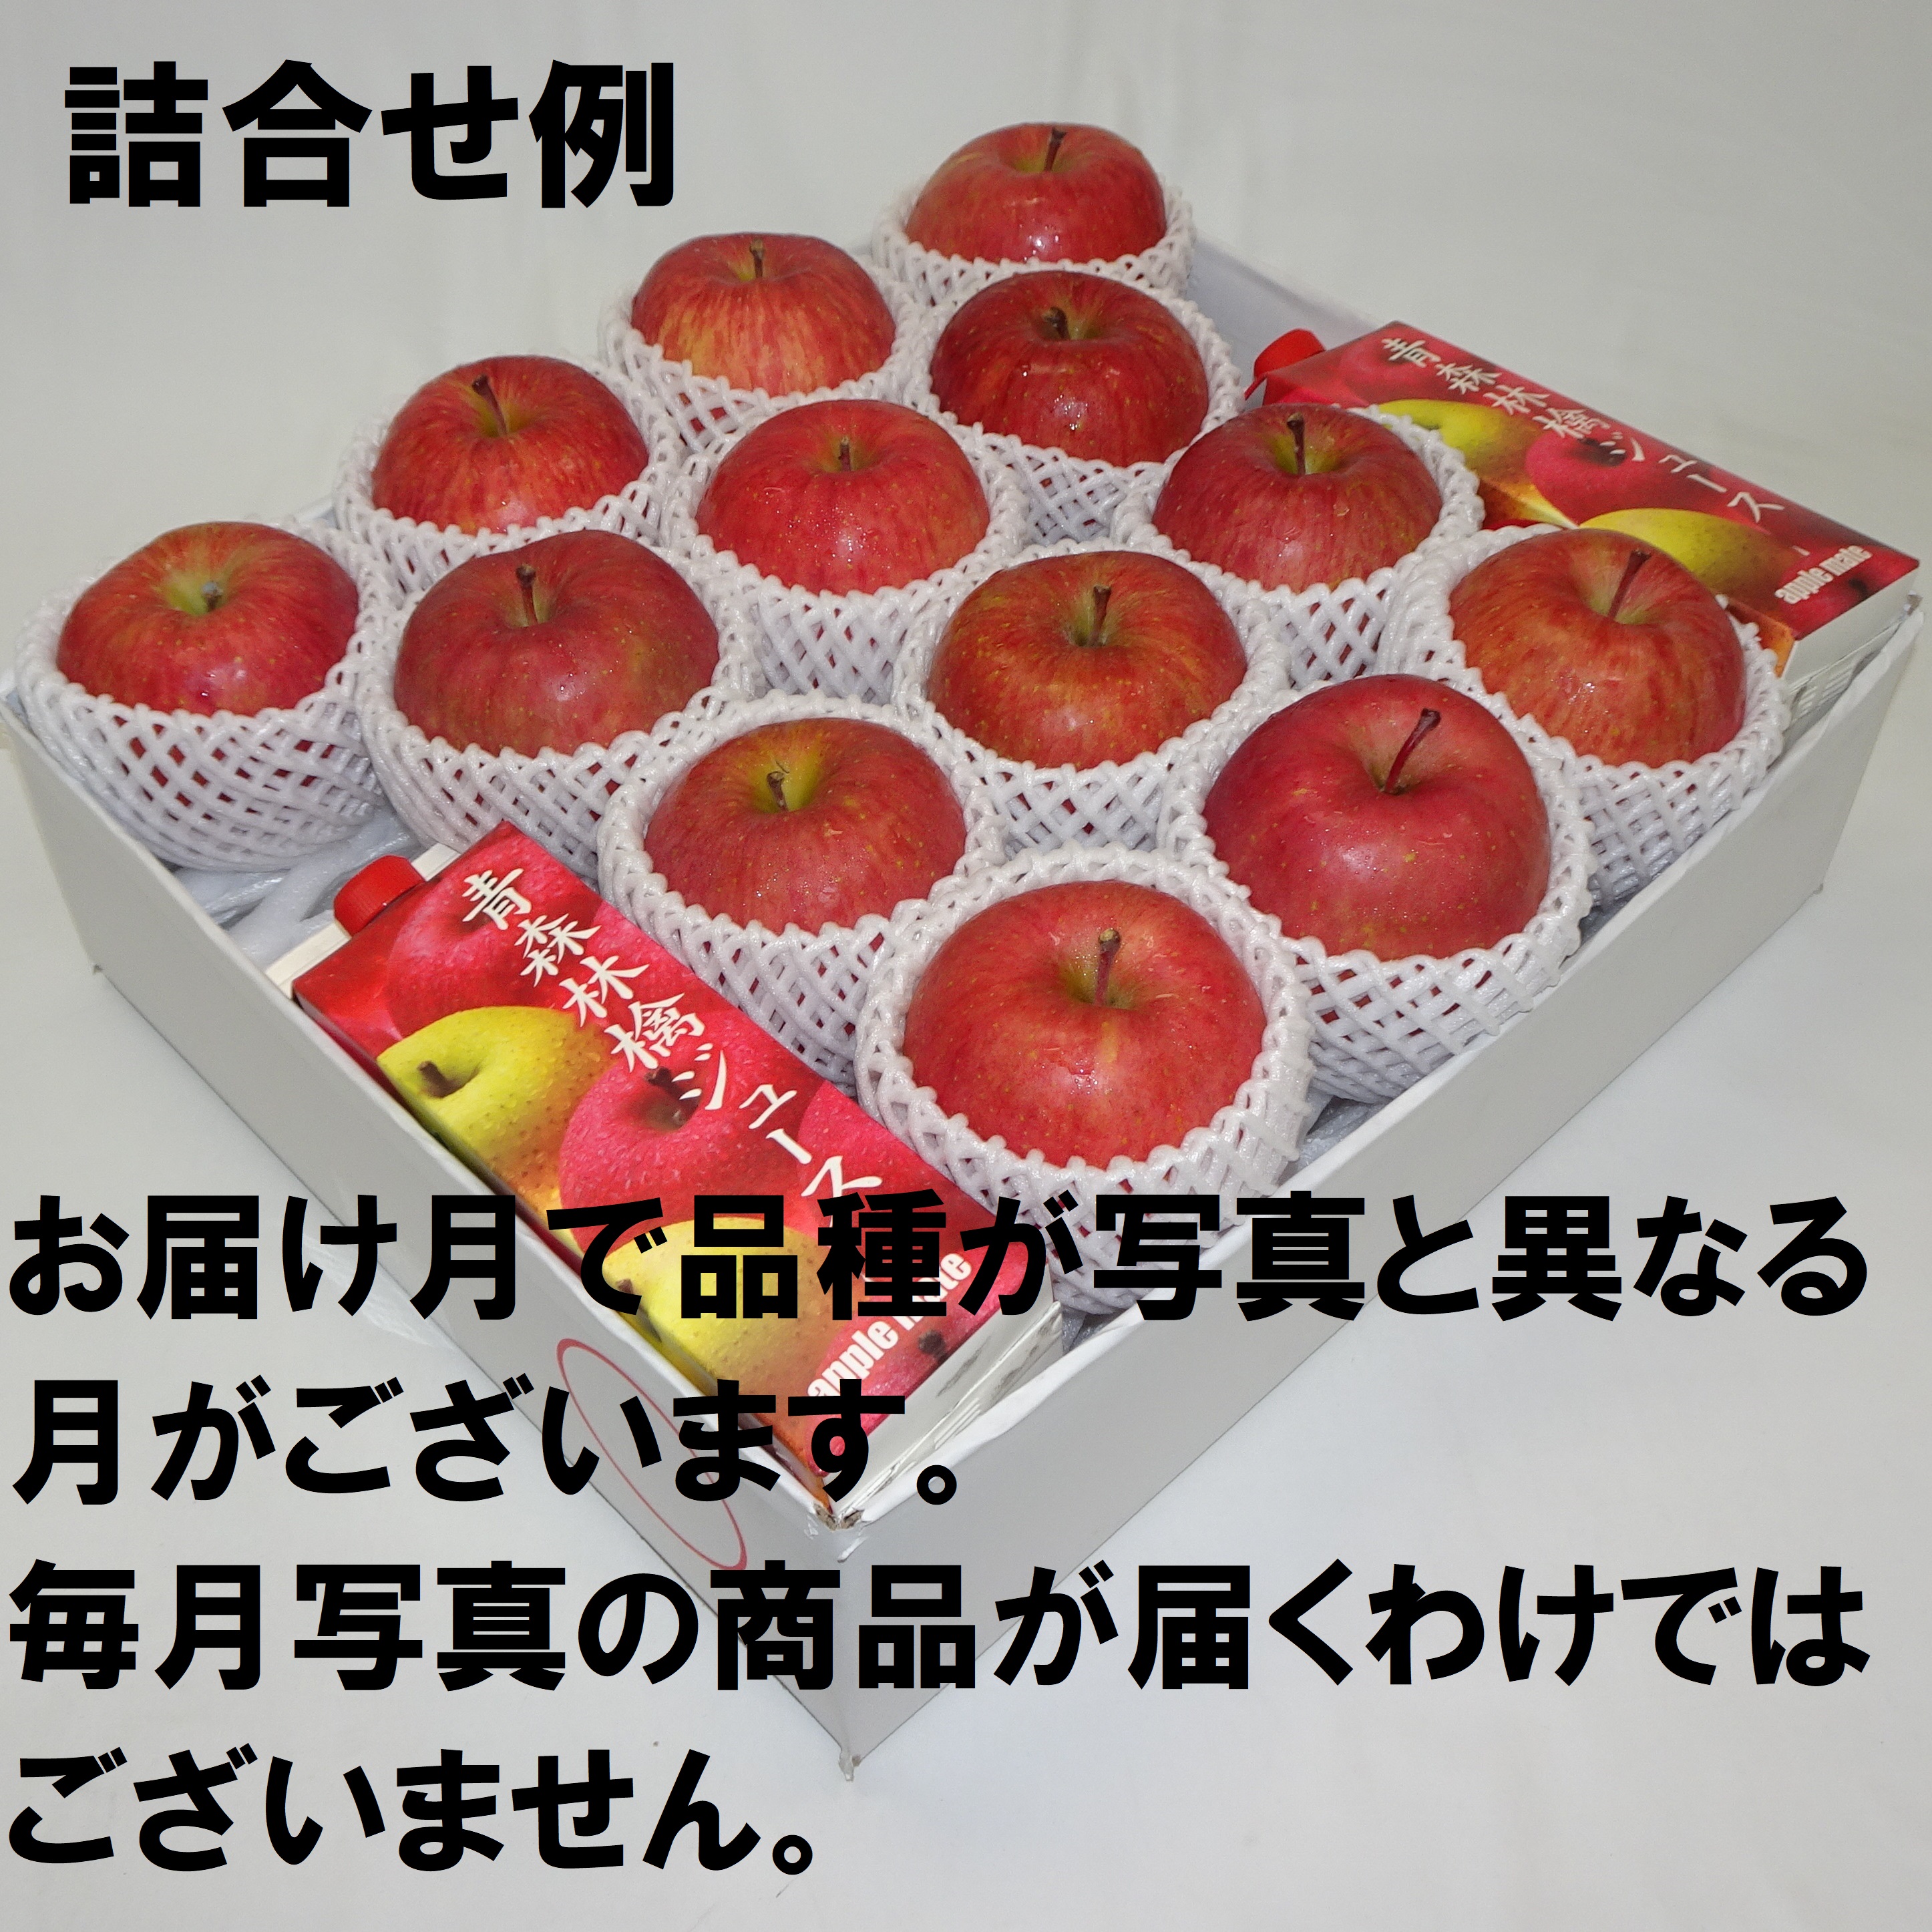 赤いりんごシリーズ 家庭用 Mセット 11ヶ月コース 11O